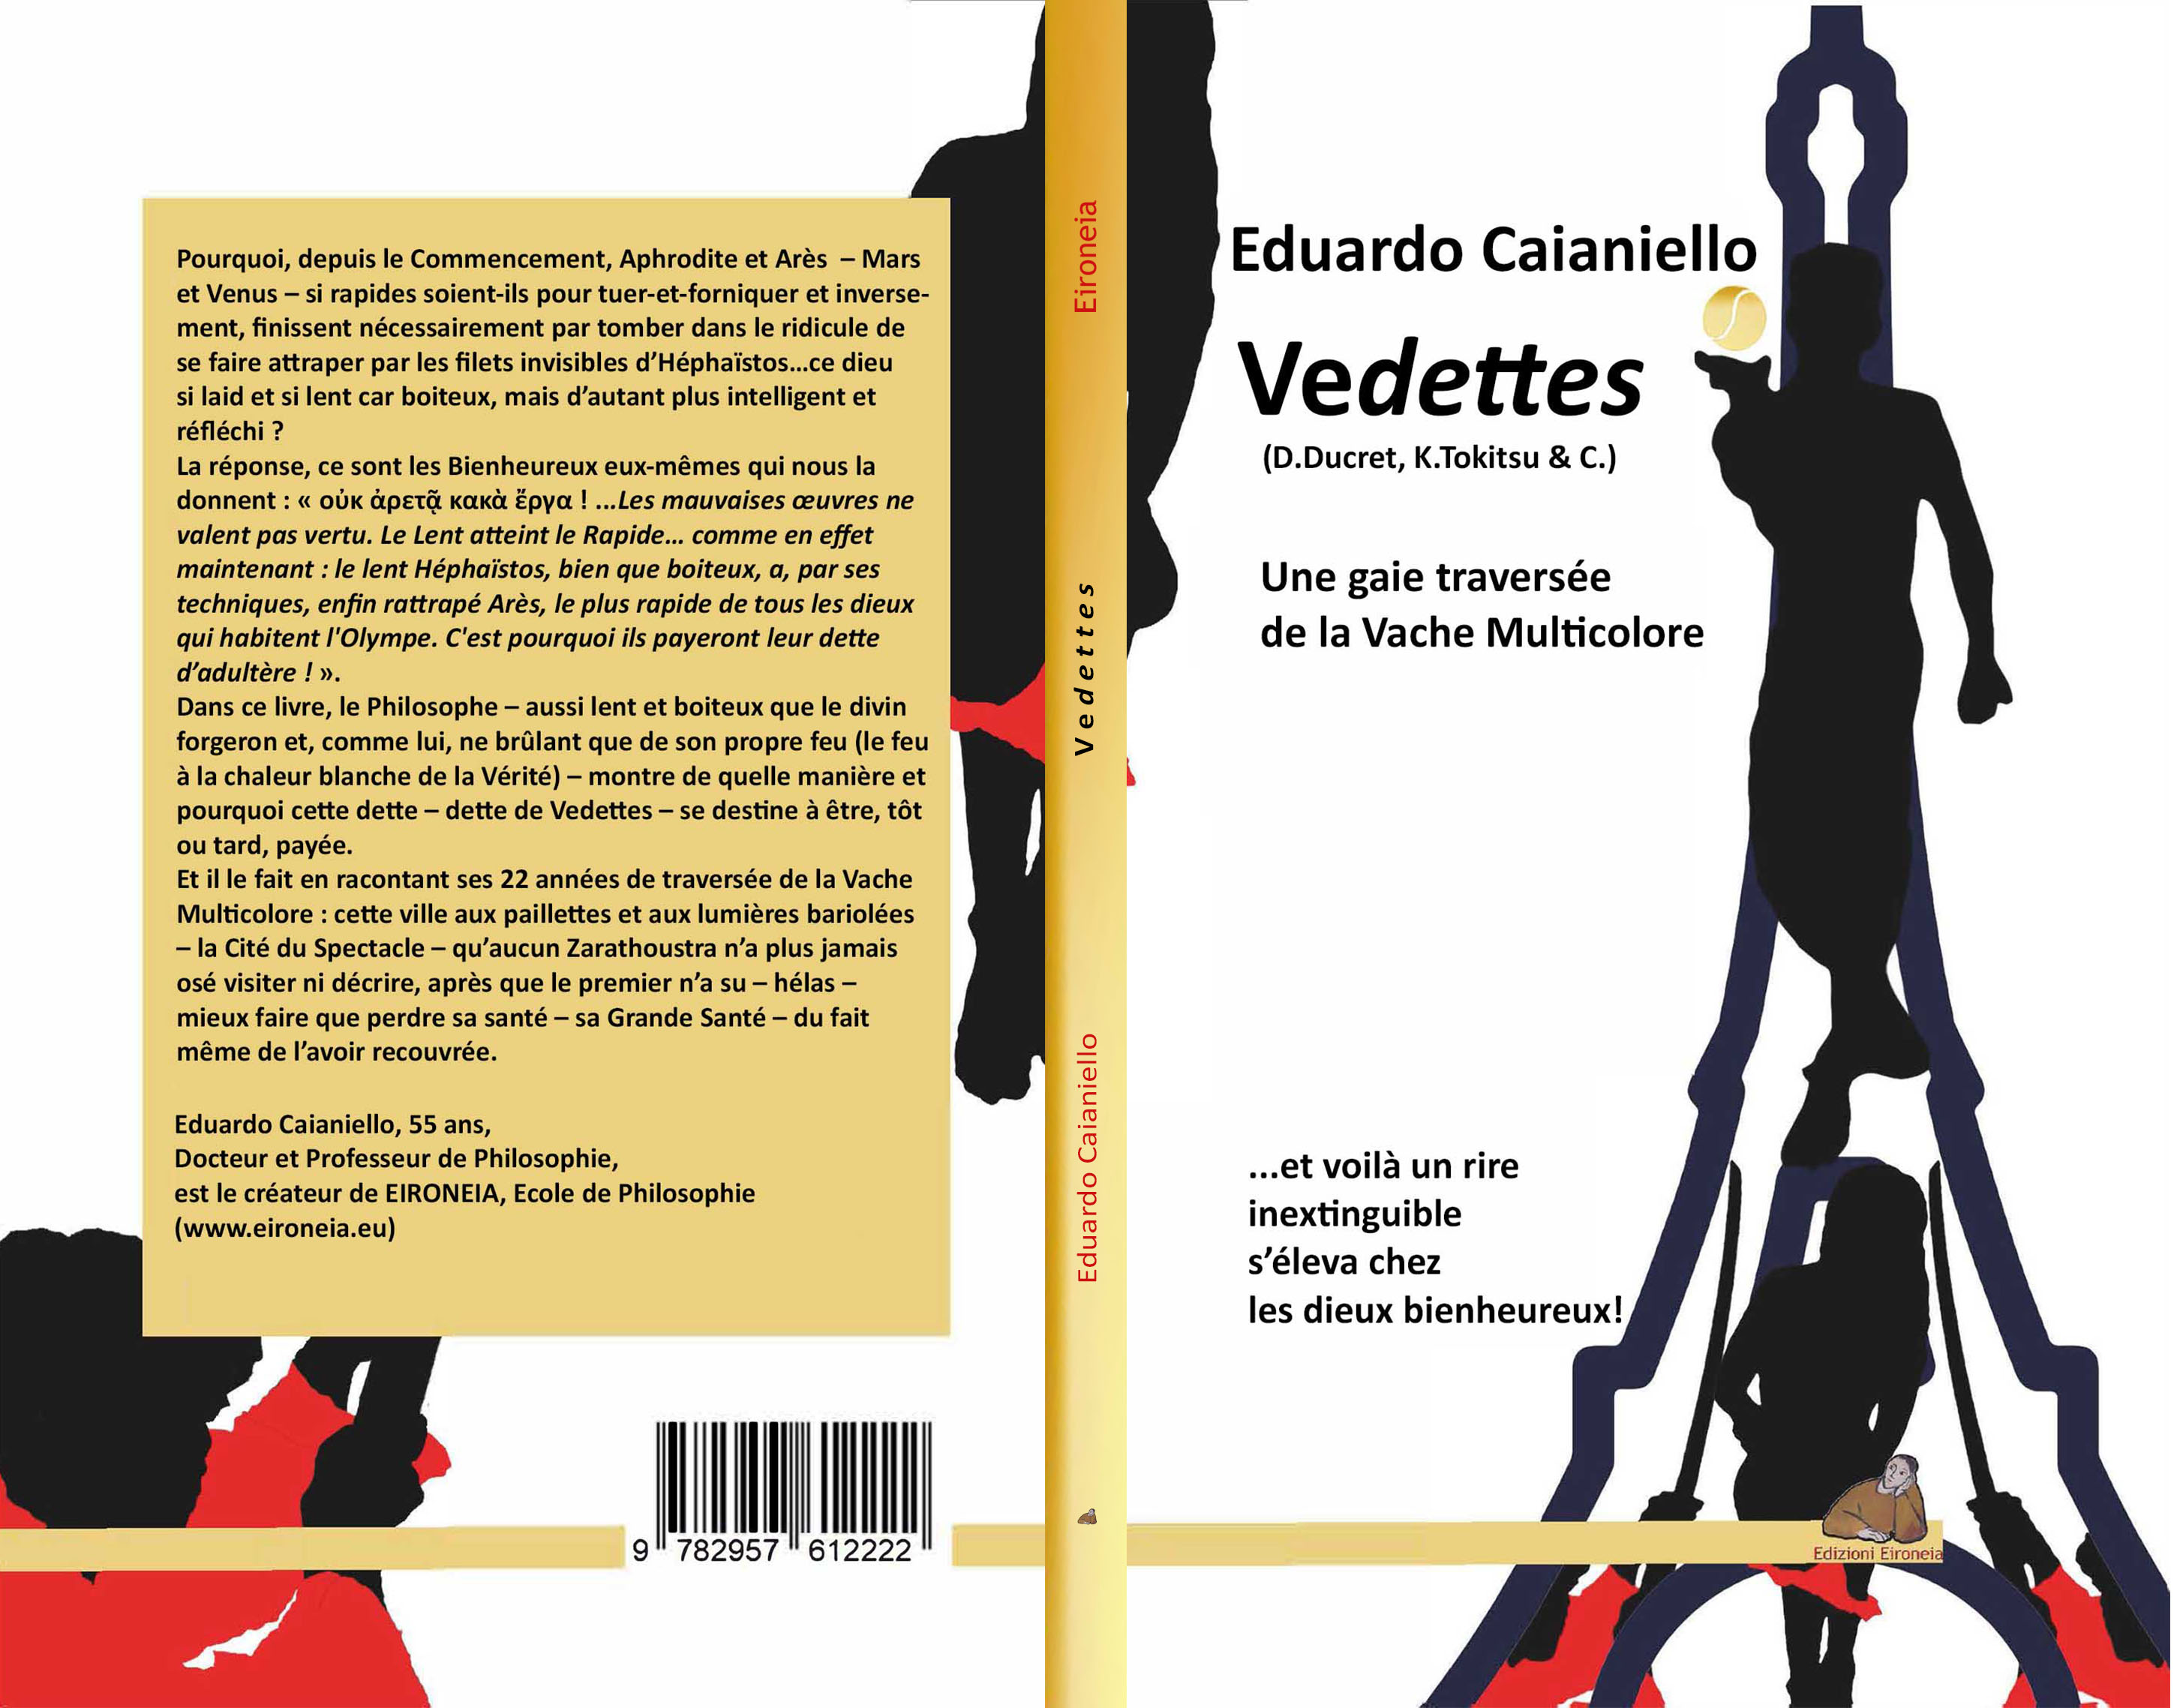 Vedettes (D.Ducret, K.Tokitsu & C.)